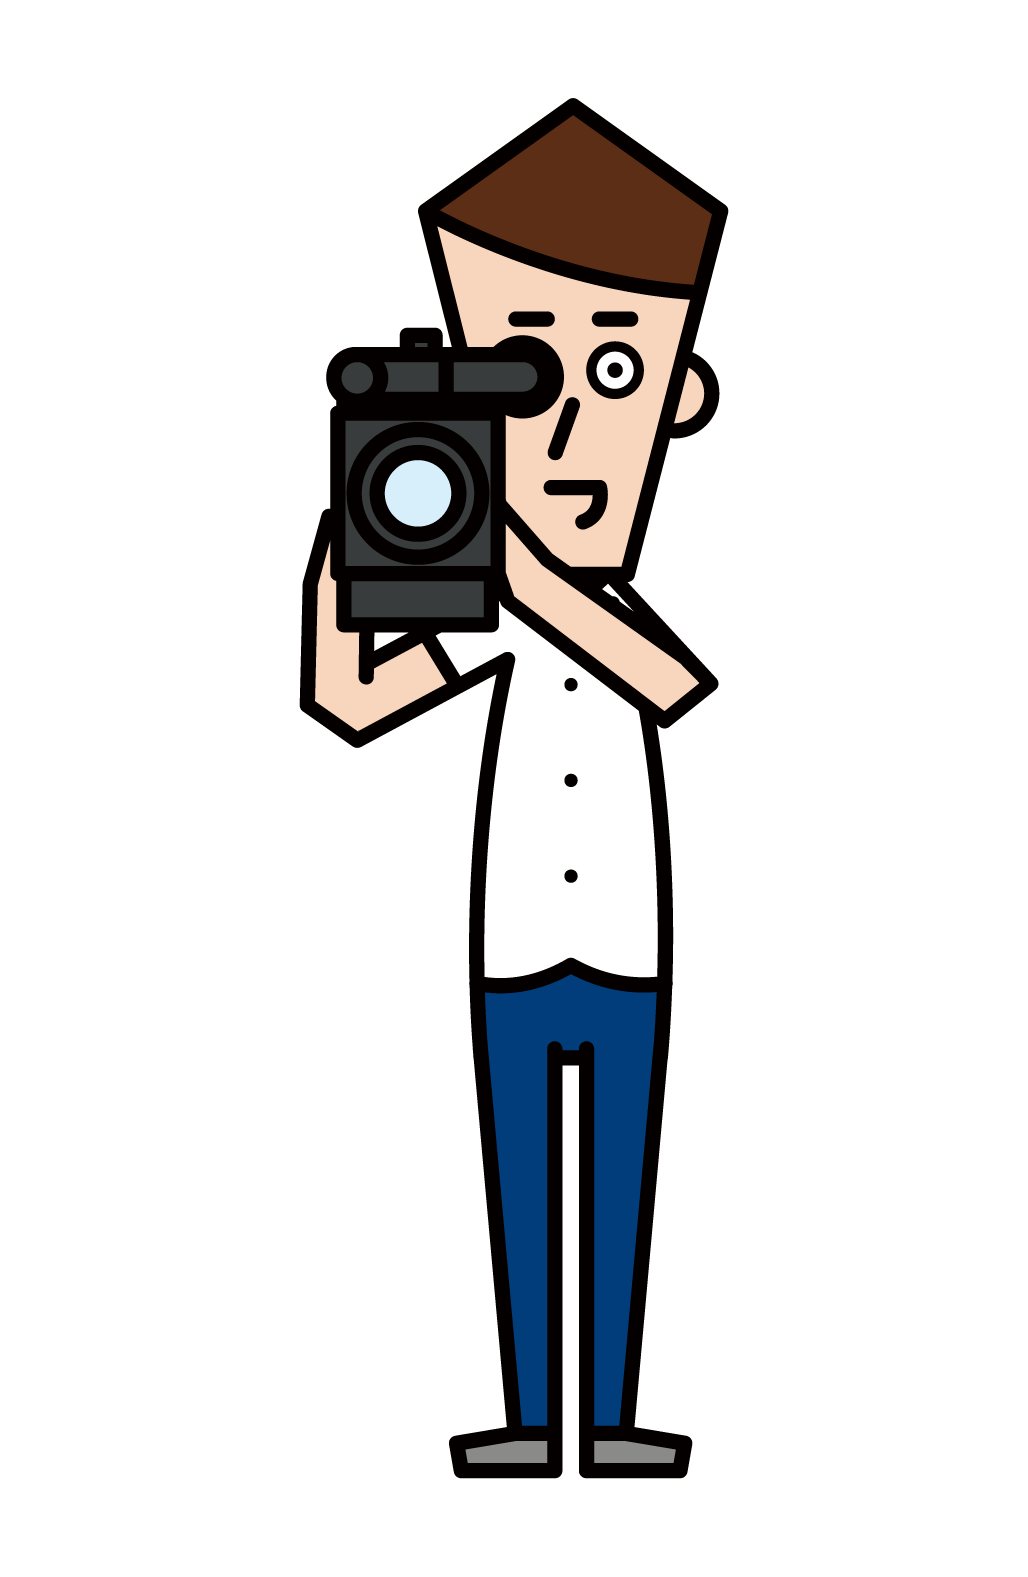 電視攝影師和電影製作人(男性)的插圖